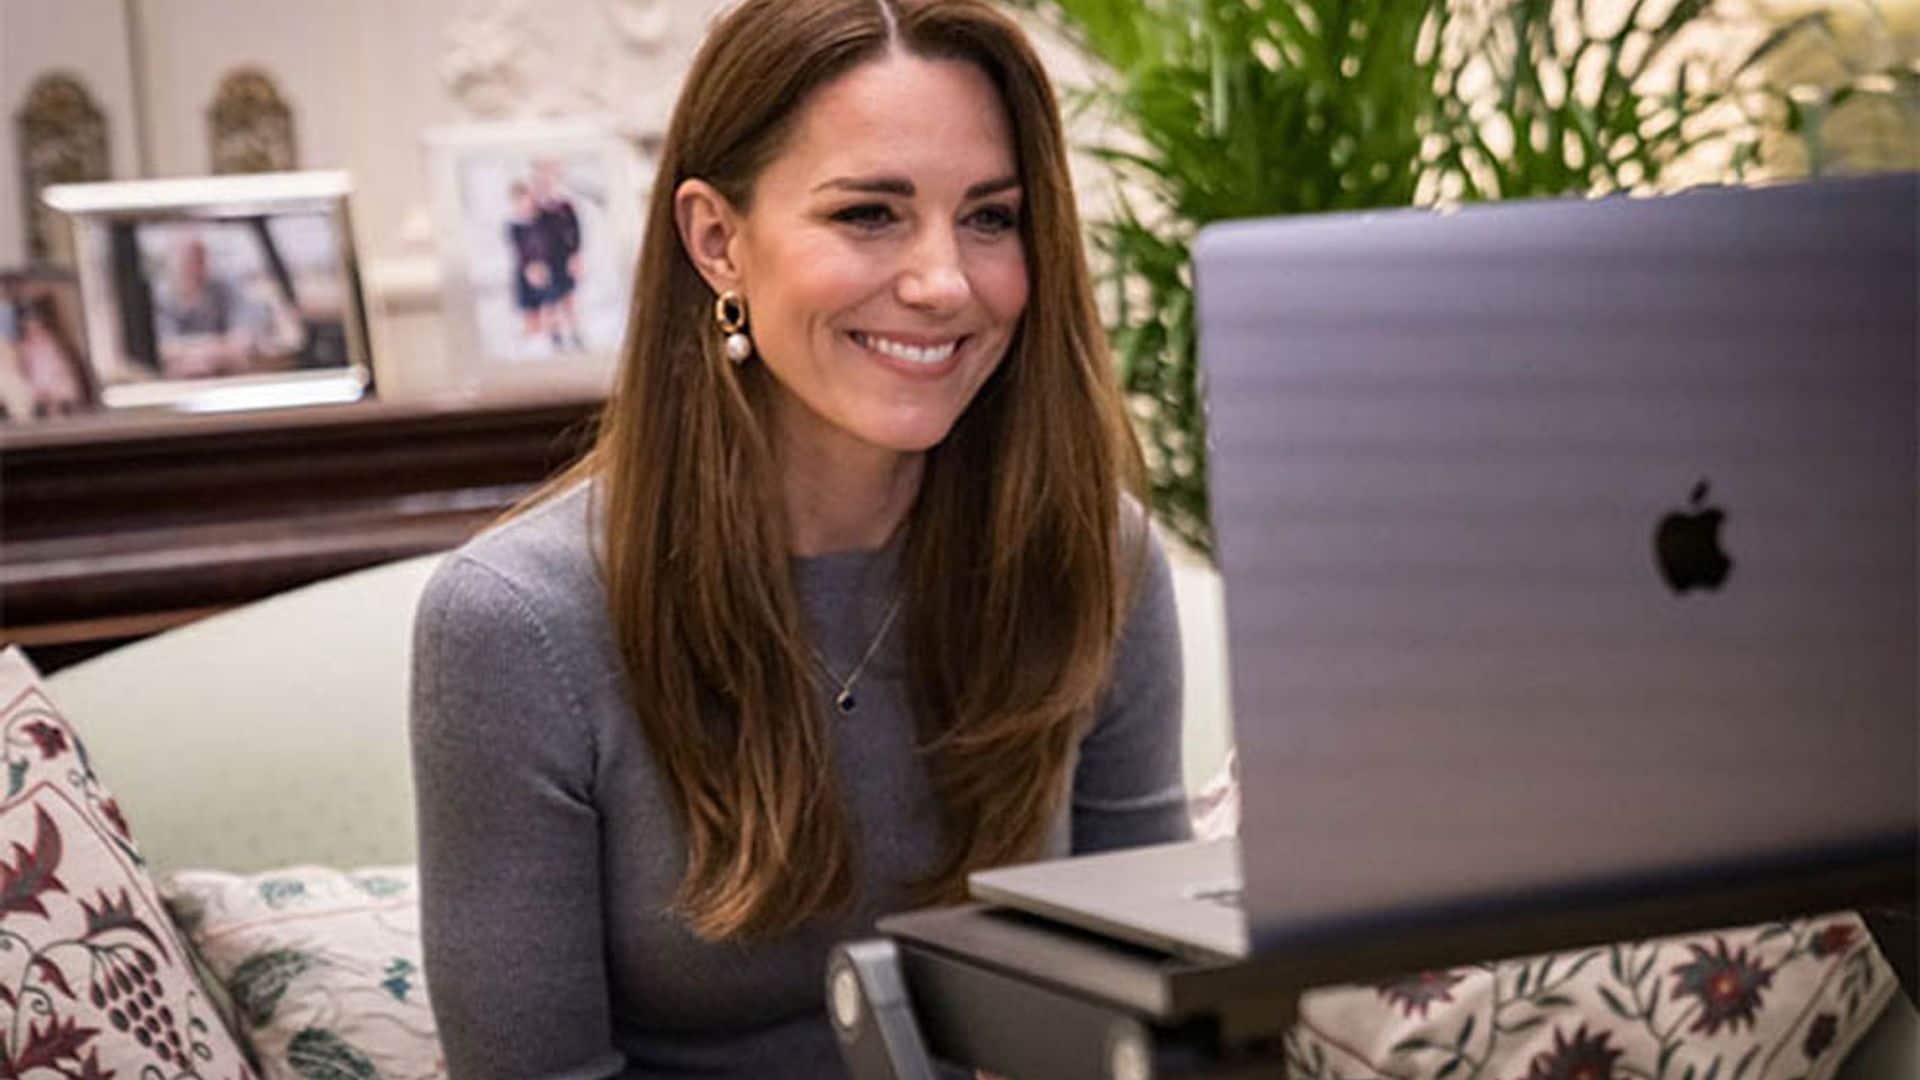 Trabaja cómoda en casa con un soporte para el portátil como el que usa Kate Middleton